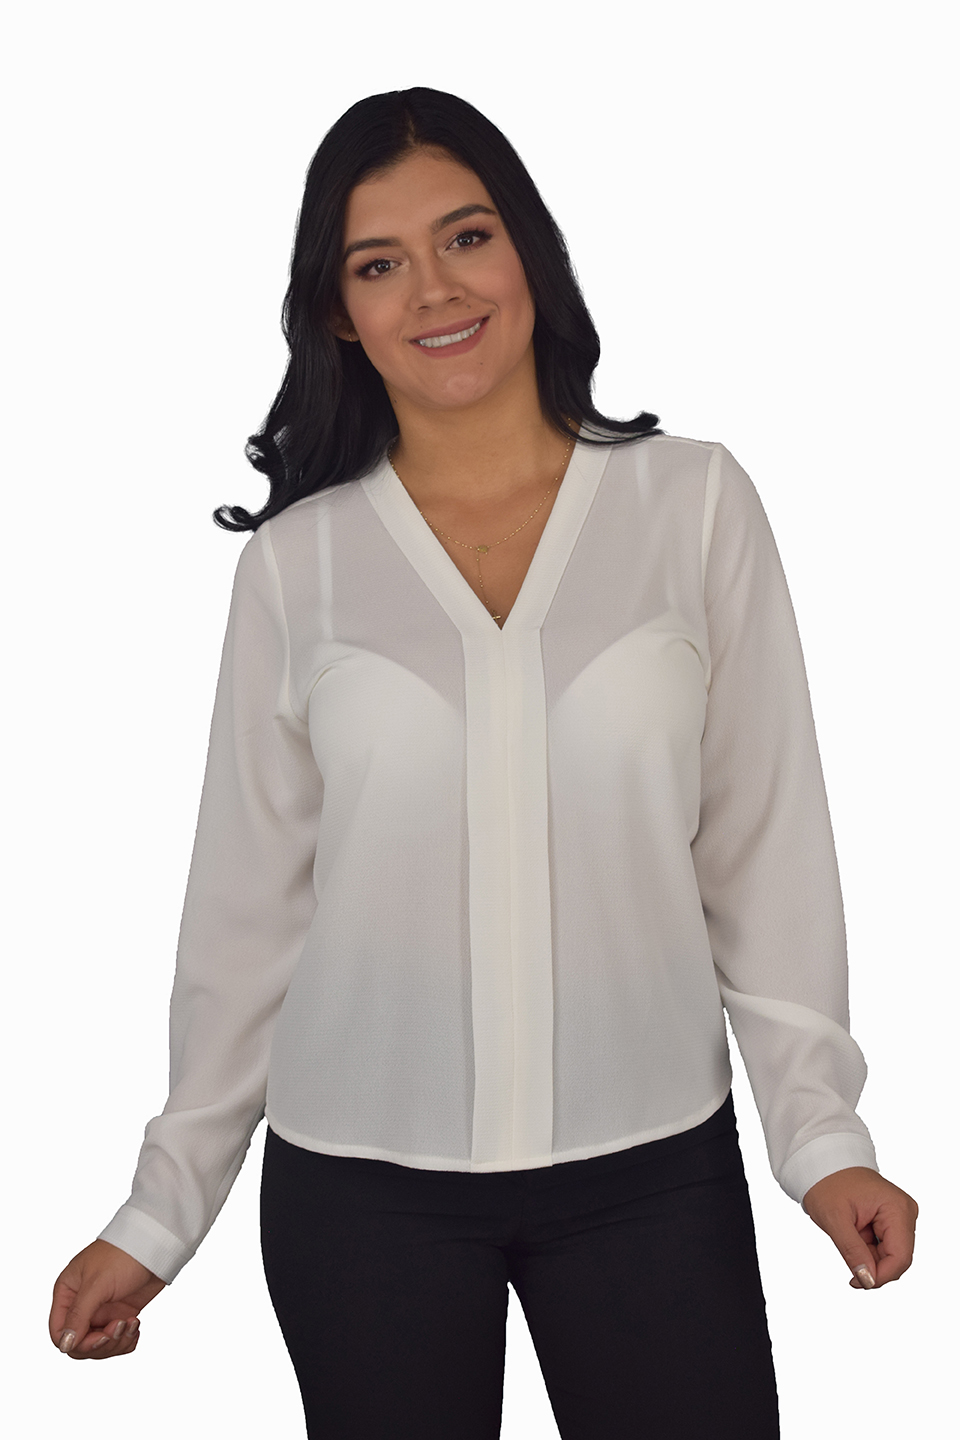 uniforme empresarial blusas ref: maurin seda  Celmy diseño y fabricación  de uniformes empresariales y uniformes ejecutivos